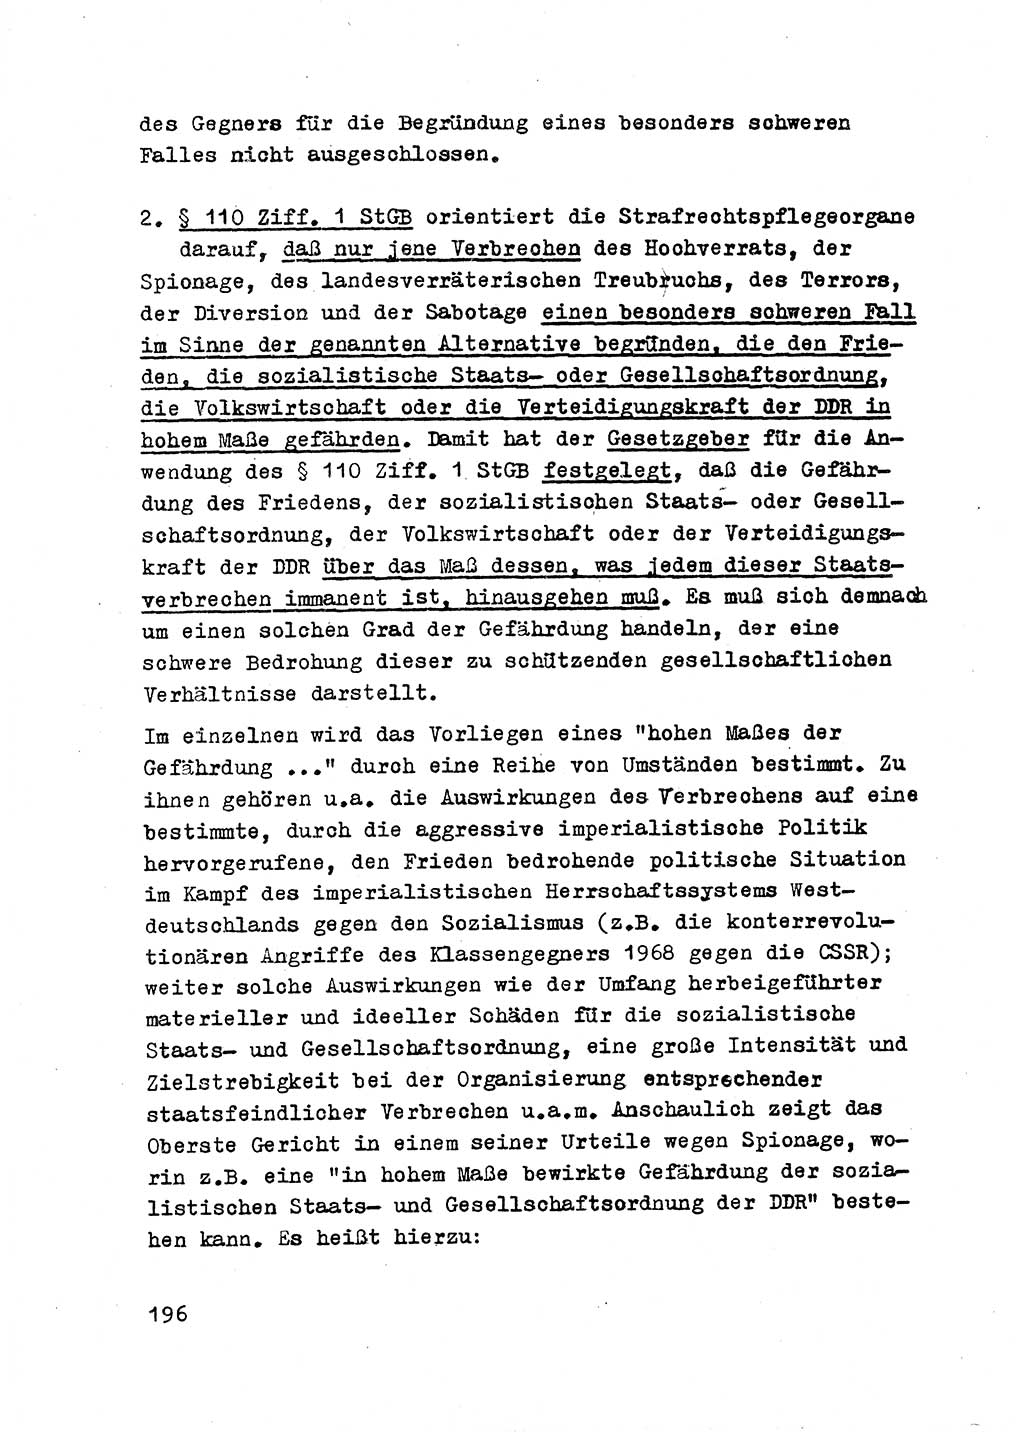 Strafrecht der DDR (Deutsche Demokratische Republik), Besonderer Teil, Lehrmaterial, Heft 2 1969, Seite 196 (Strafr. DDR BT Lehrmat. H. 2 1969, S. 196)